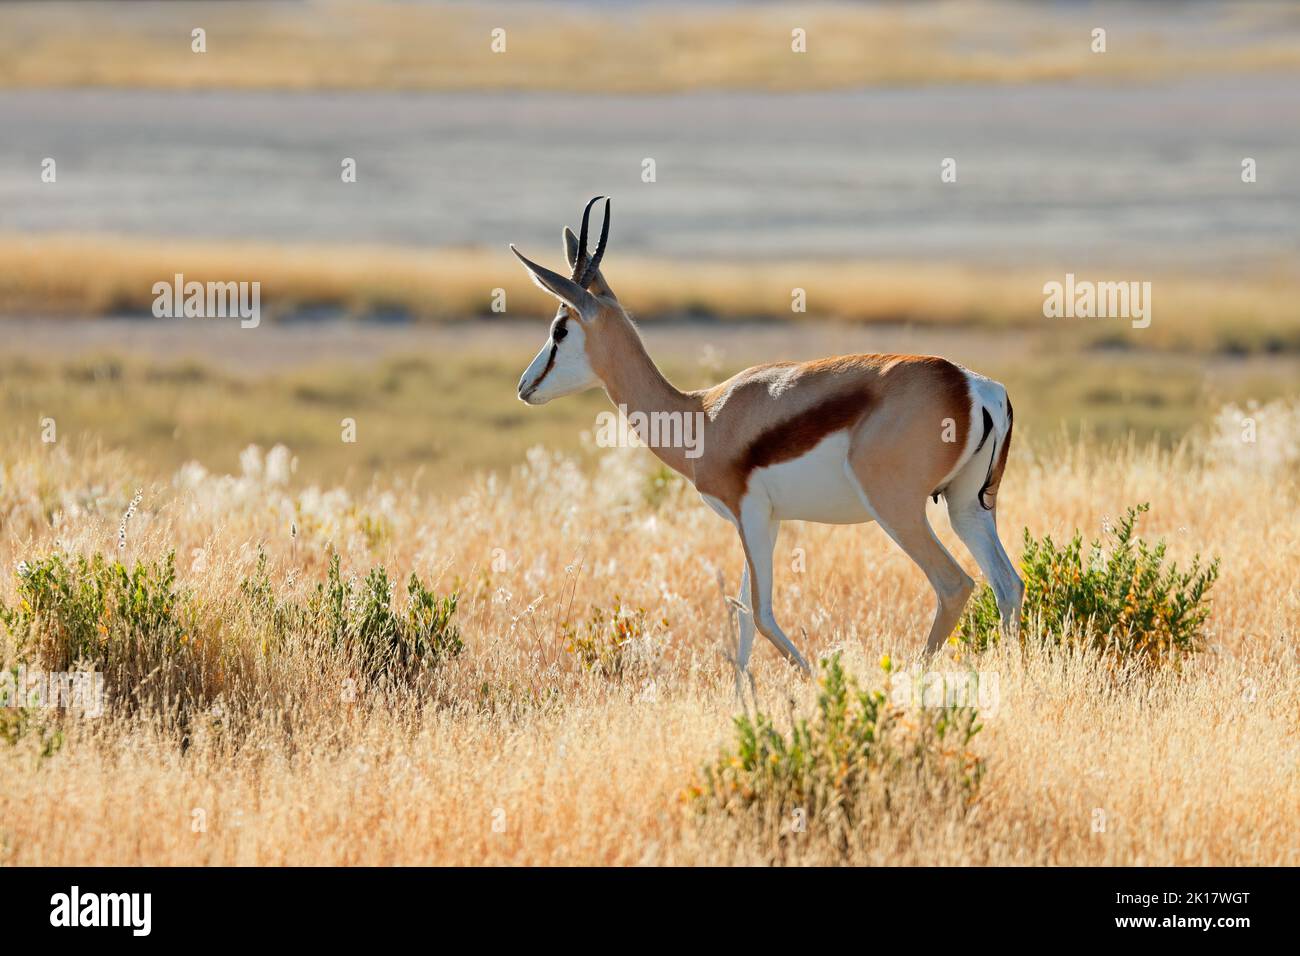 Antilope de Springbok (Antidorcas marsupialis) dans un habitat naturel, parc national d'Etosha, Namibie Banque D'Images